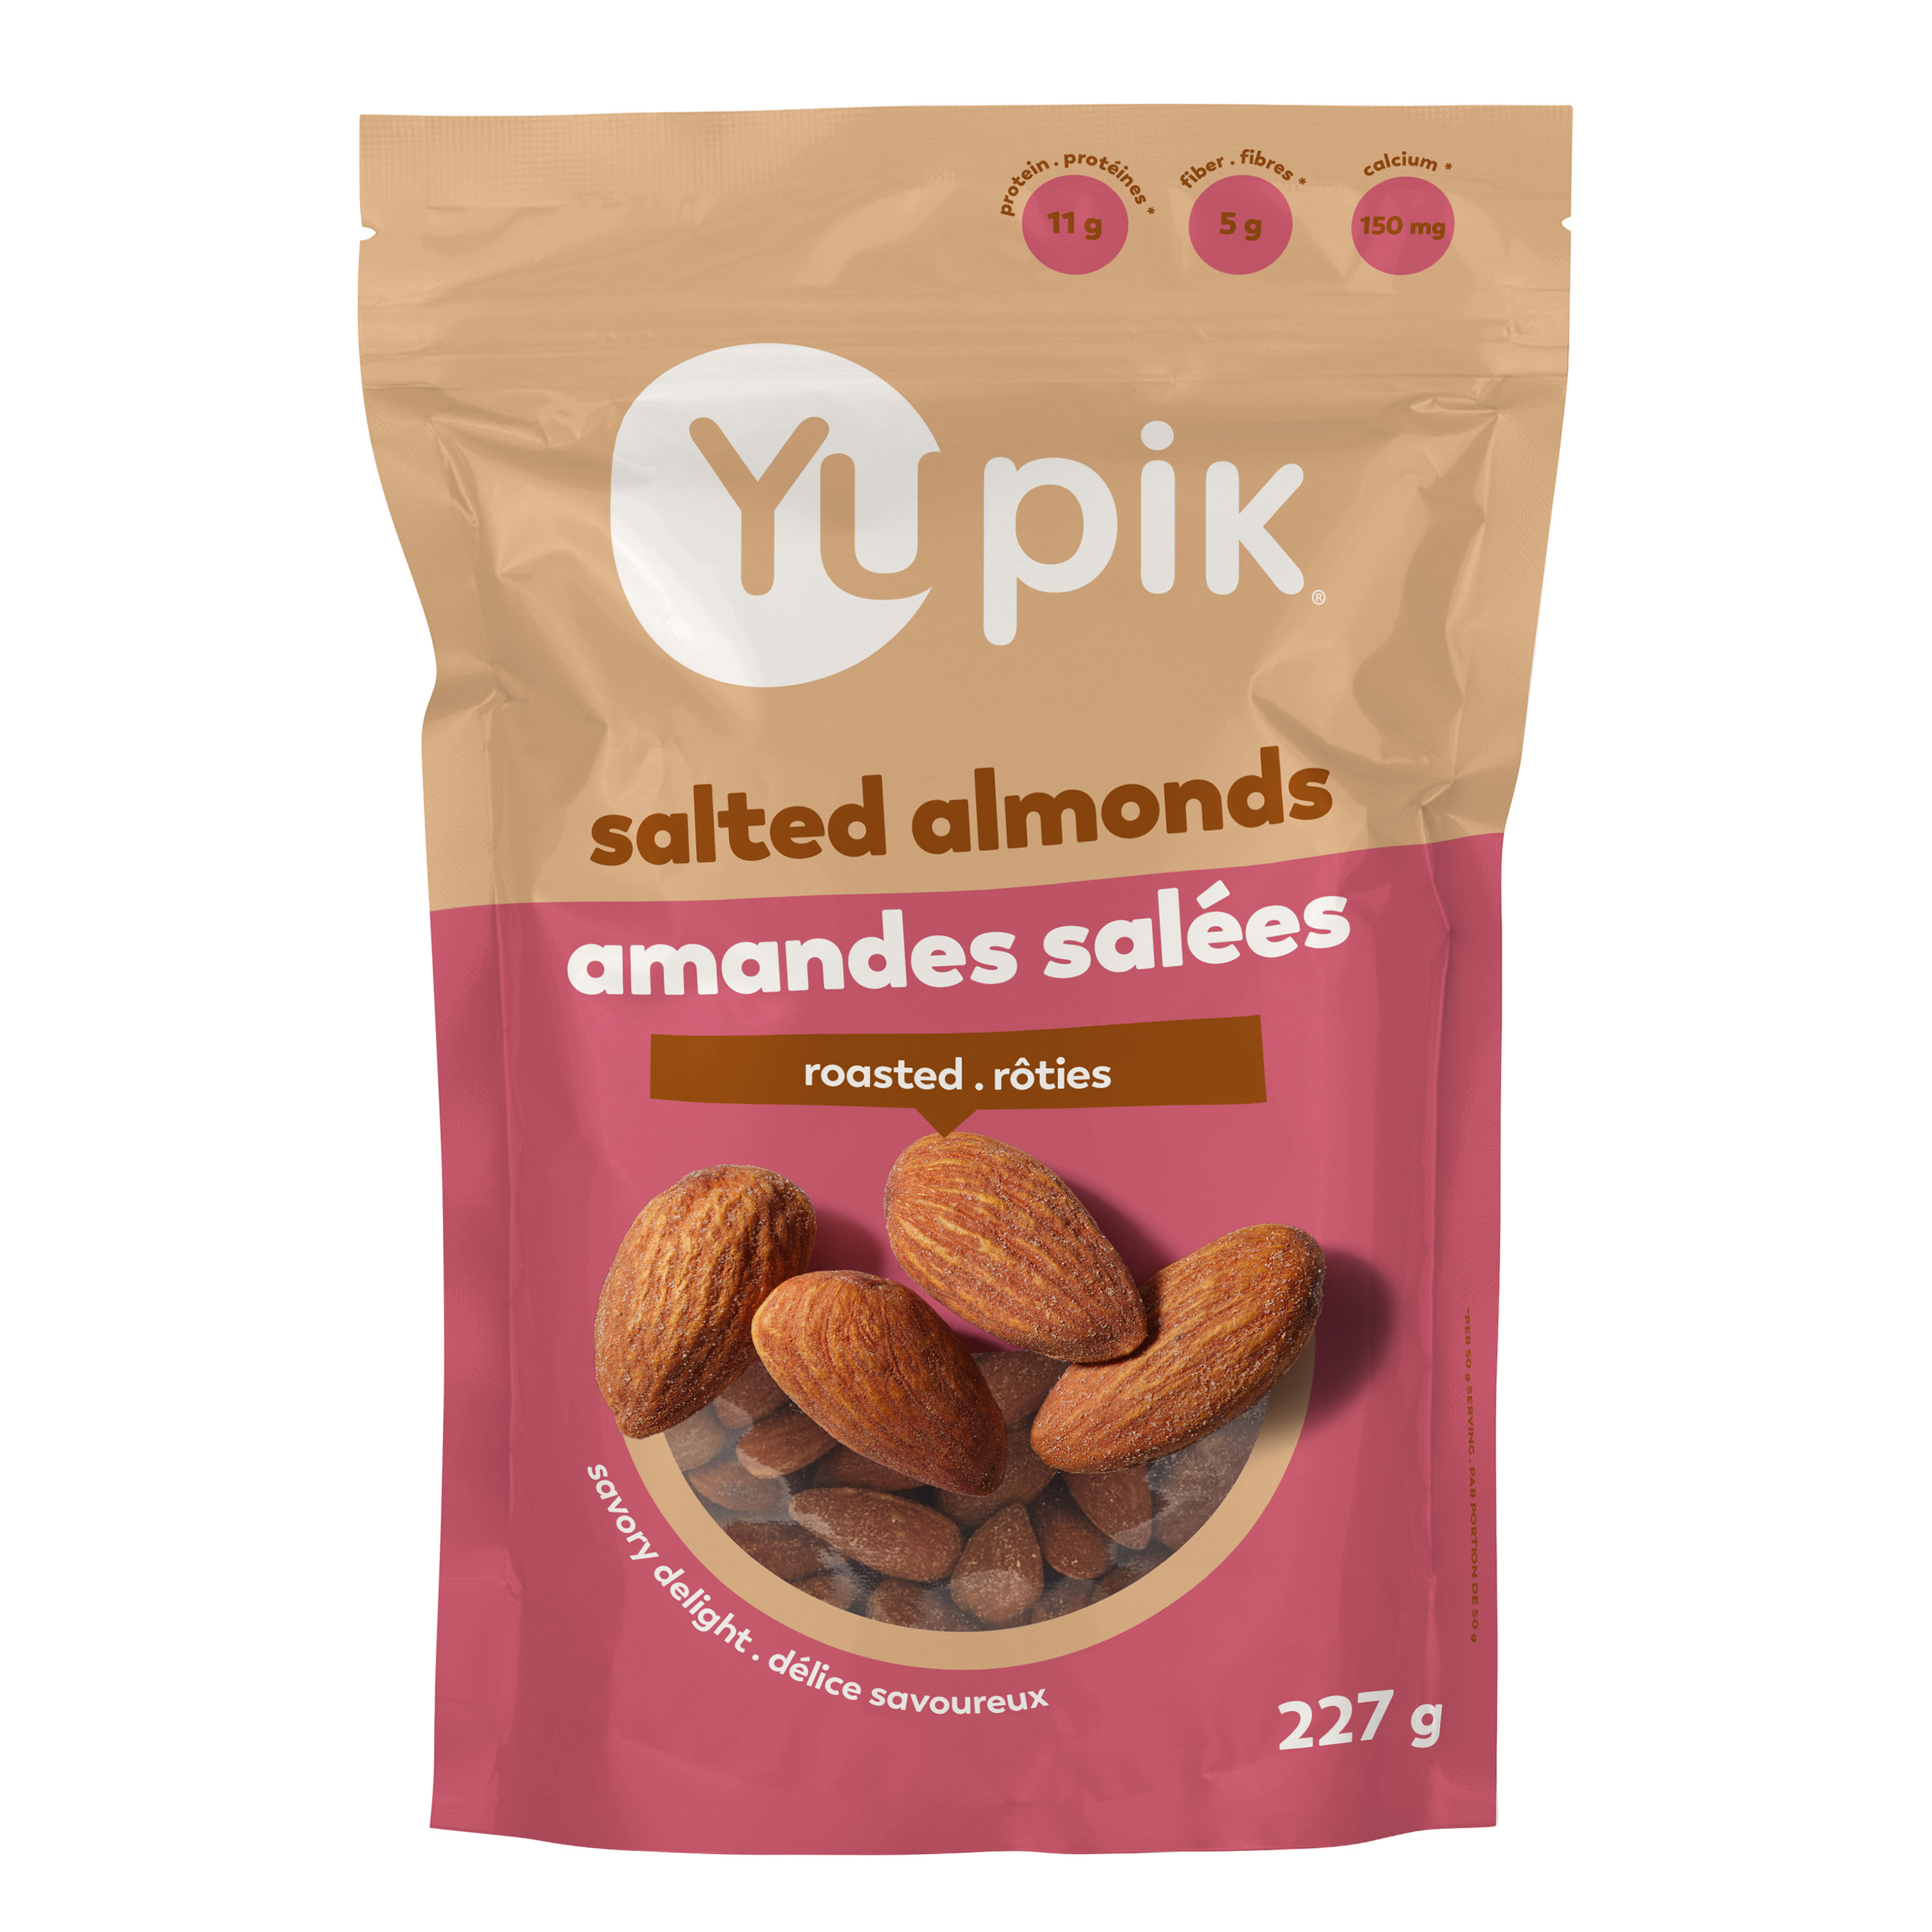 Almonds, Non GMO Canola oil, Salt.